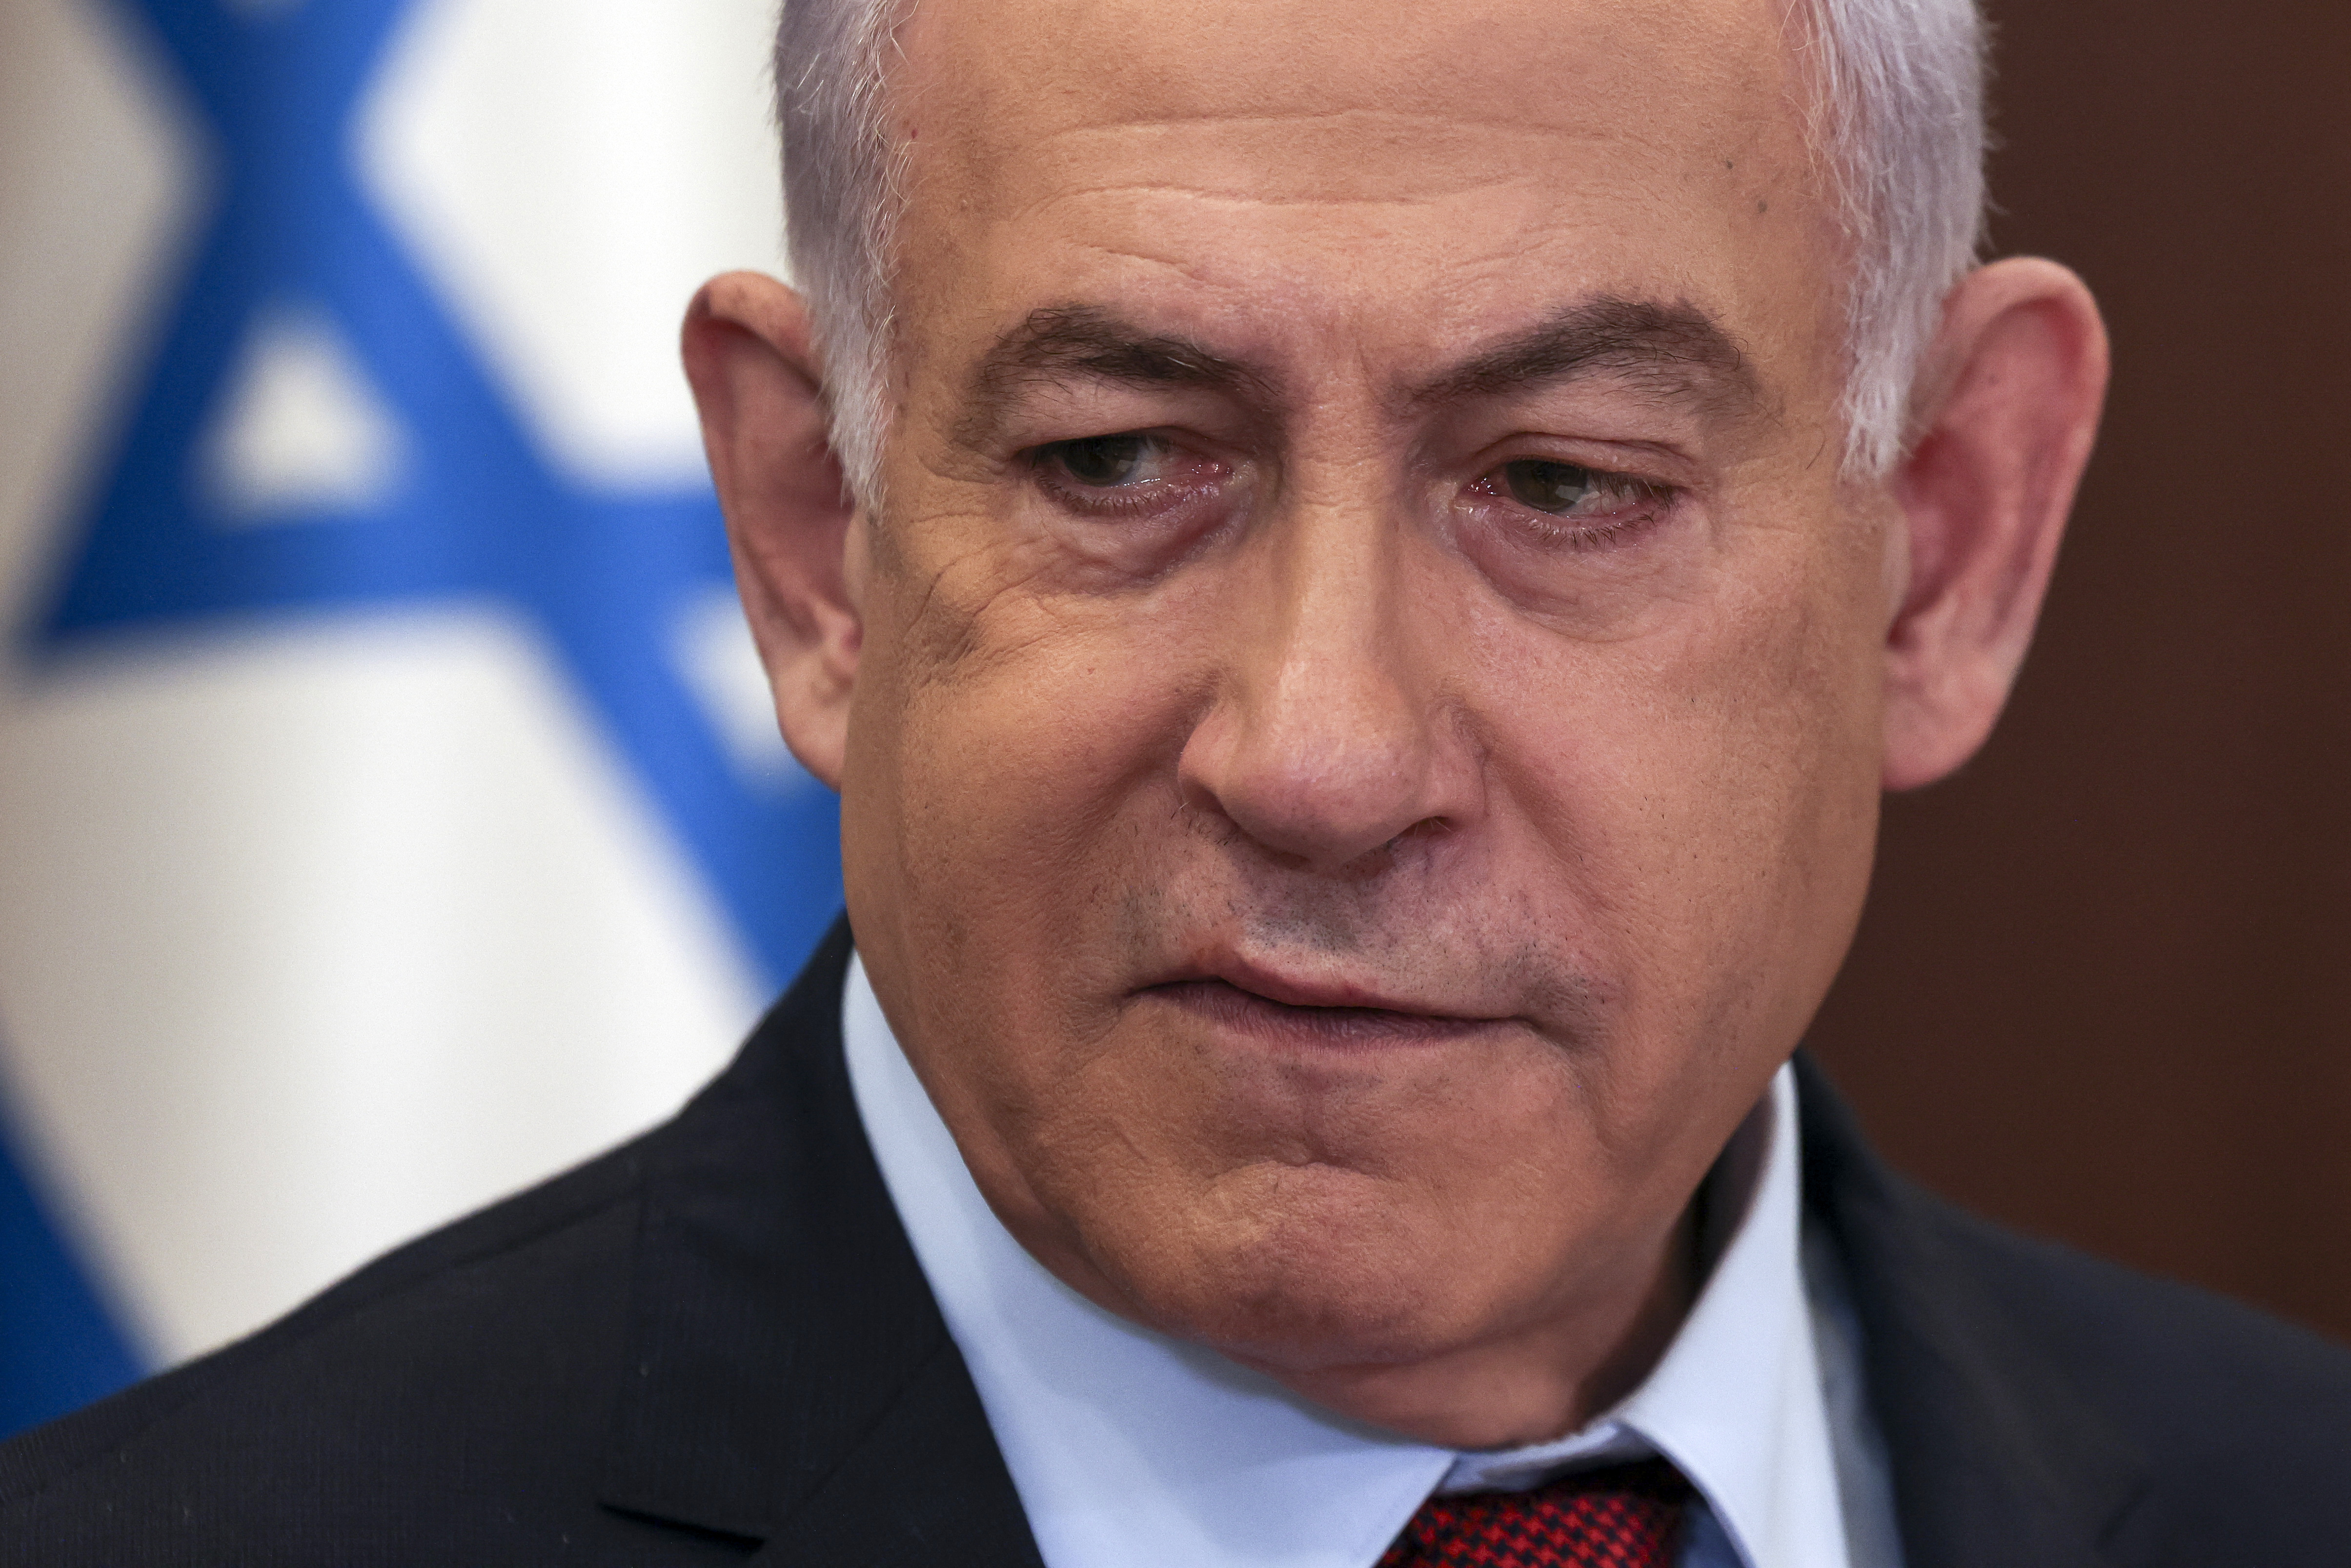 En una visita a las tropas israelíes, Netanyahu advirtió: “Seguiremos hasta la destrucción de Hamás”